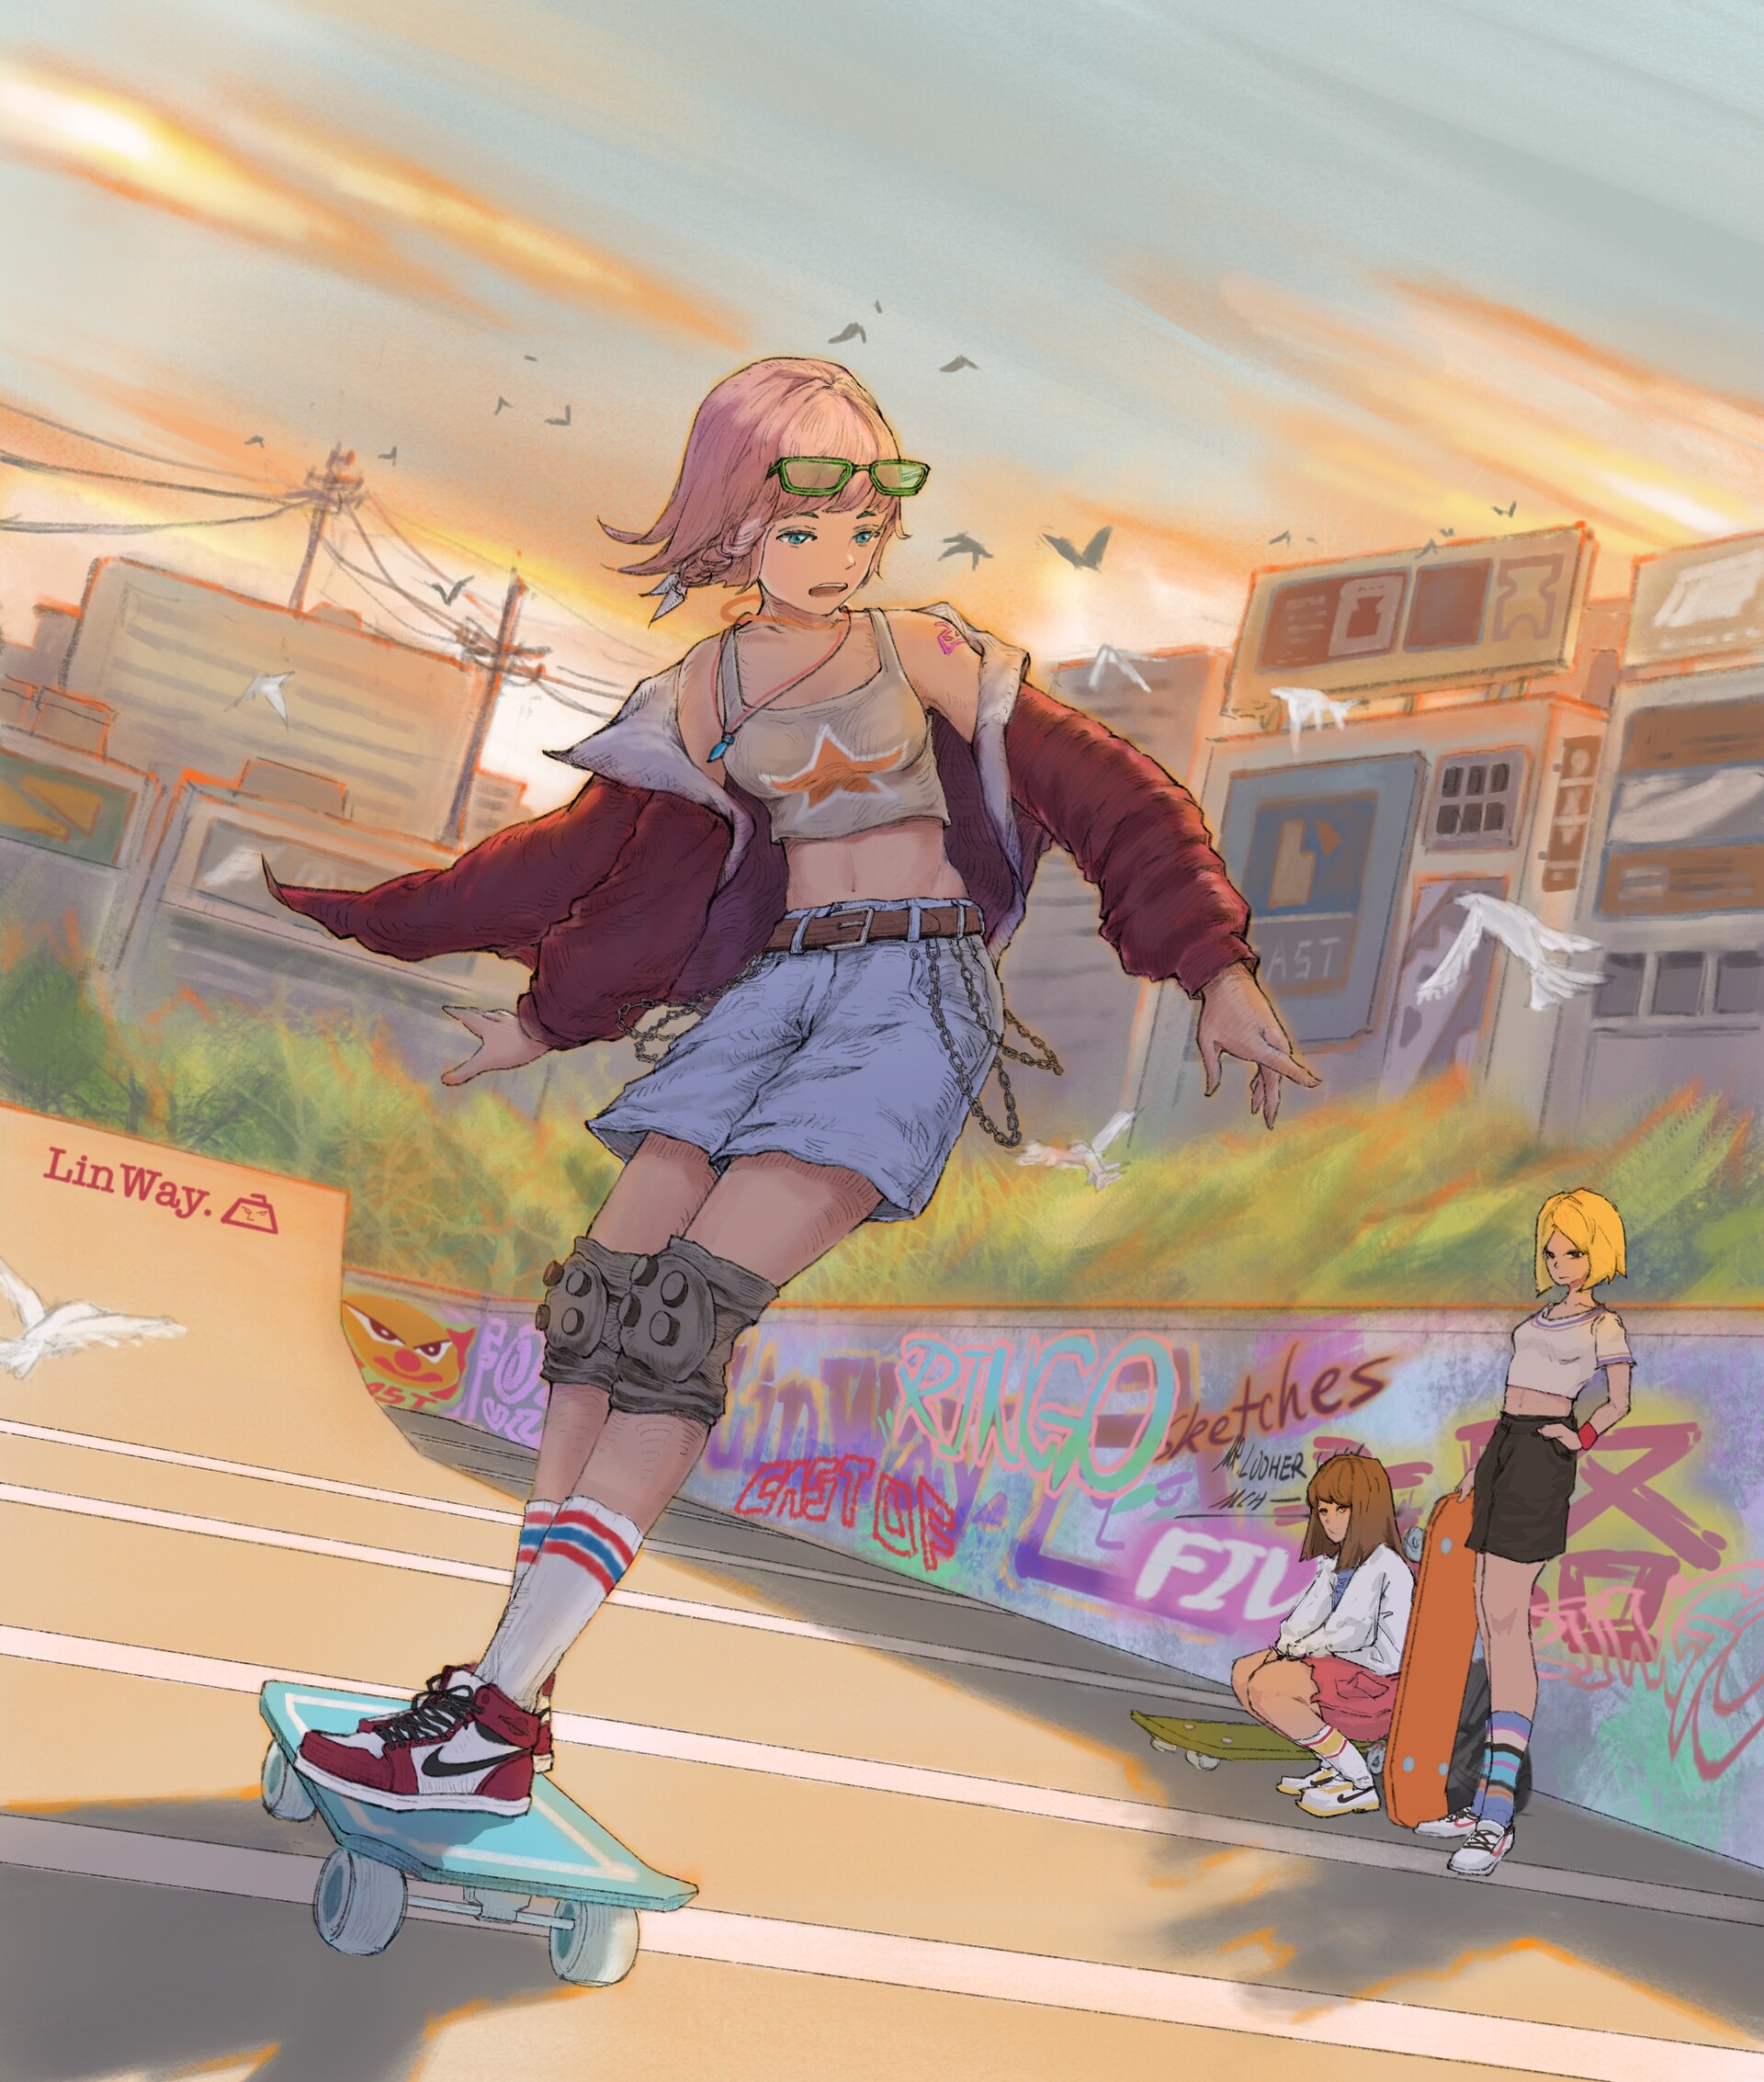 ArtStation - Skateboarding girls in the sunset